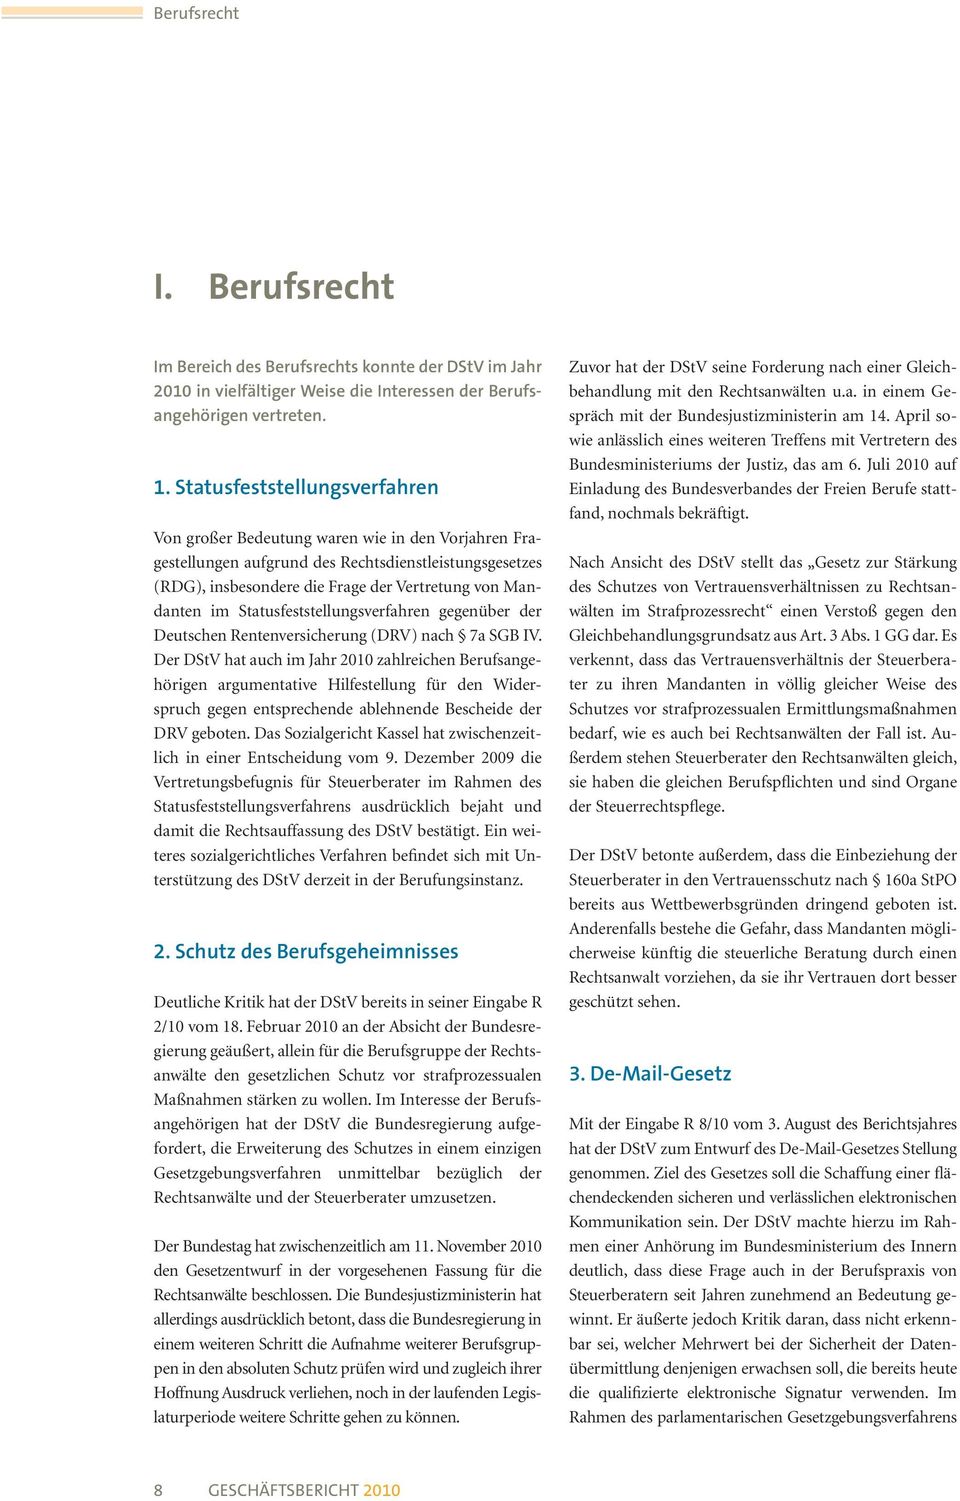 Statusfeststellungsverfahren gegenüber der Deutschen Rentenversicherung (DRV) nach 7a SGB IV.